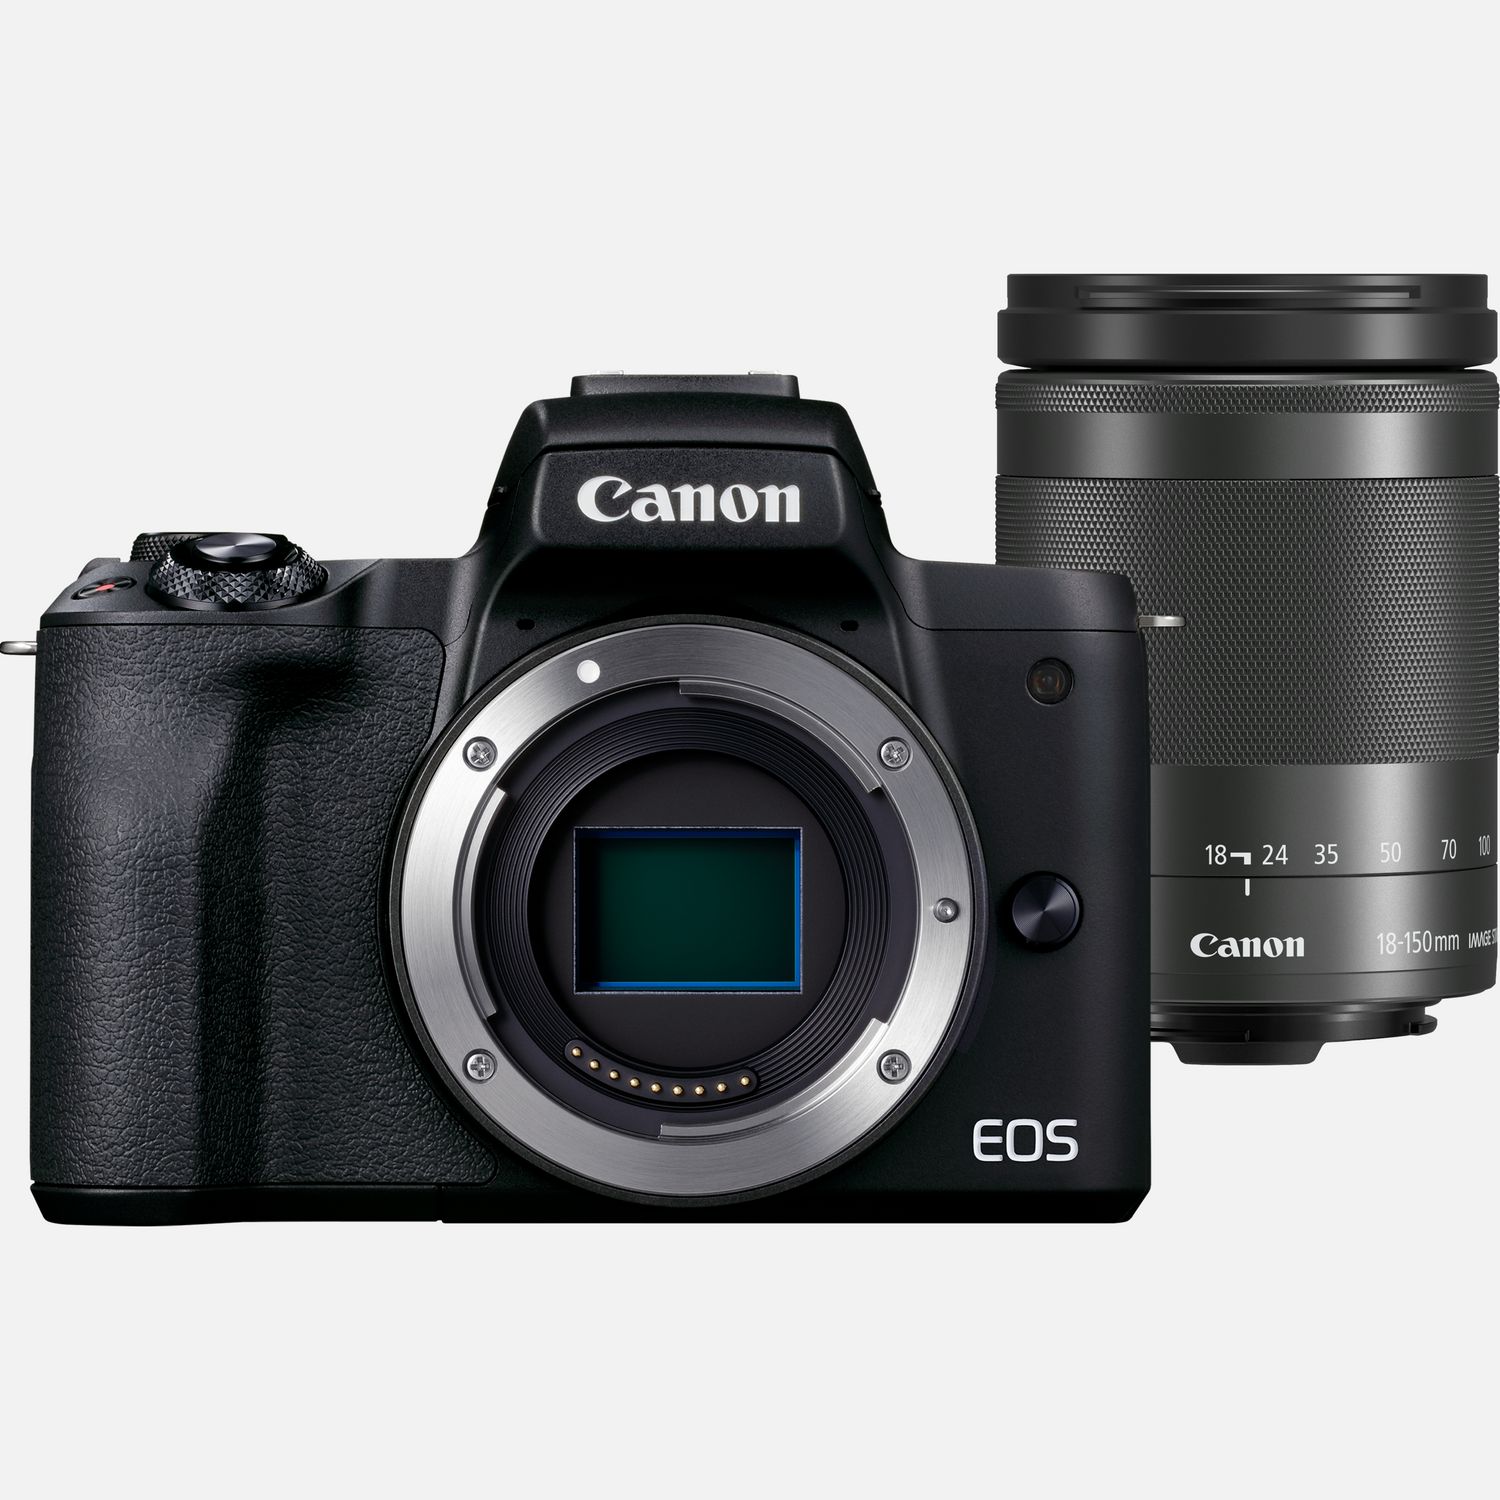 Image of Fotocamera mirrorless Canon EOS M50 Mark II, Nero + obiettivo EF-M 18-150mm f/3.5-6.3 IS STM, Grafite